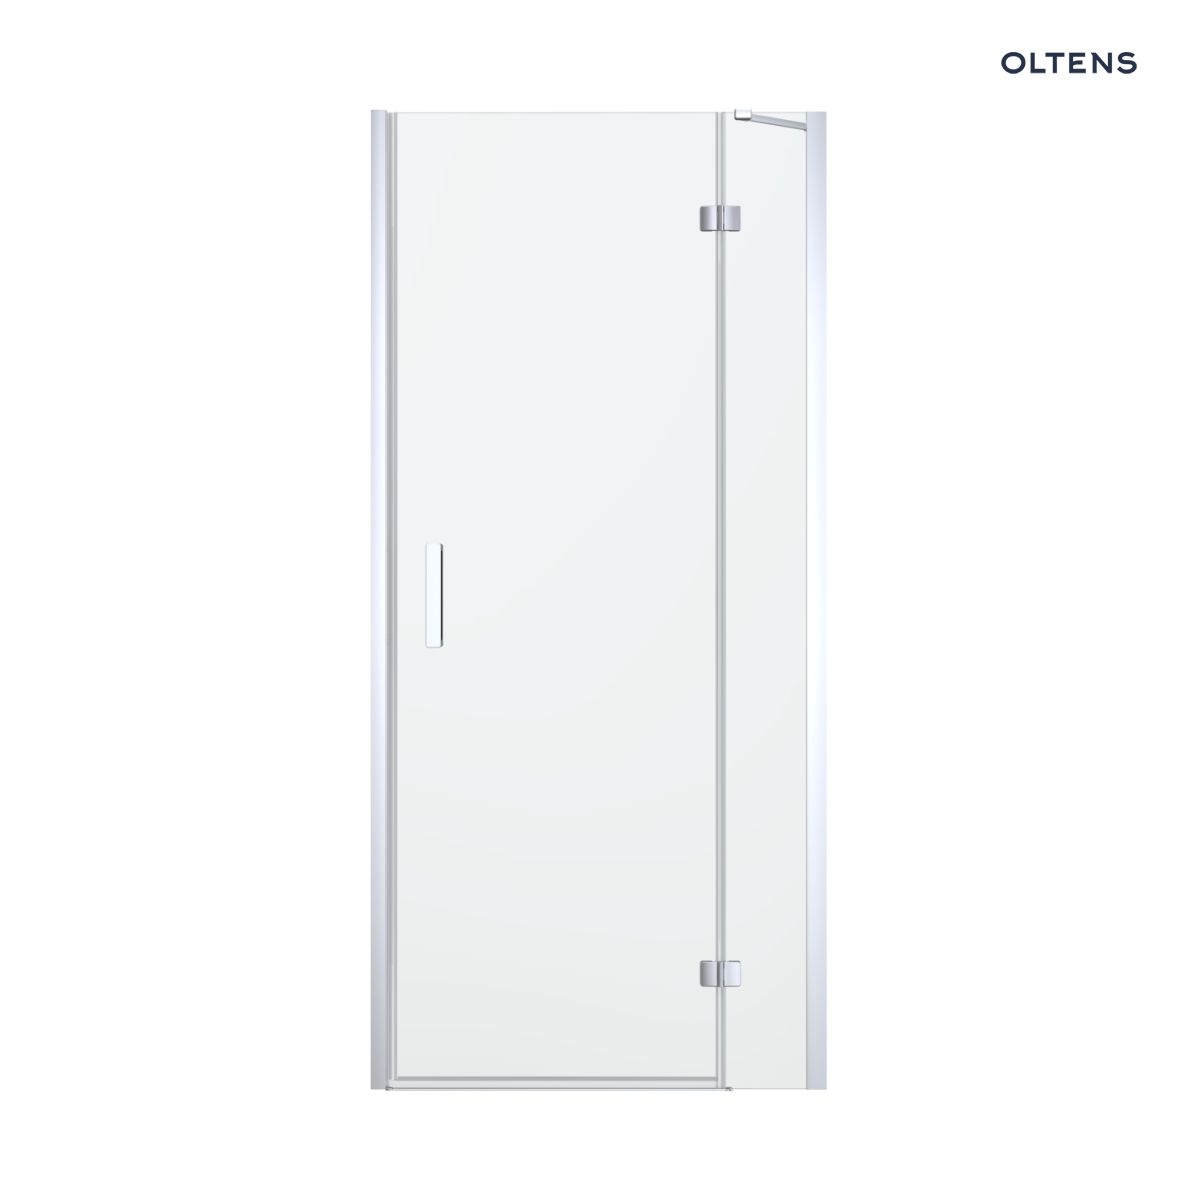 Oltens Disa drzwi prysznicowe 100 cm wnękowe szkło przezroczyste